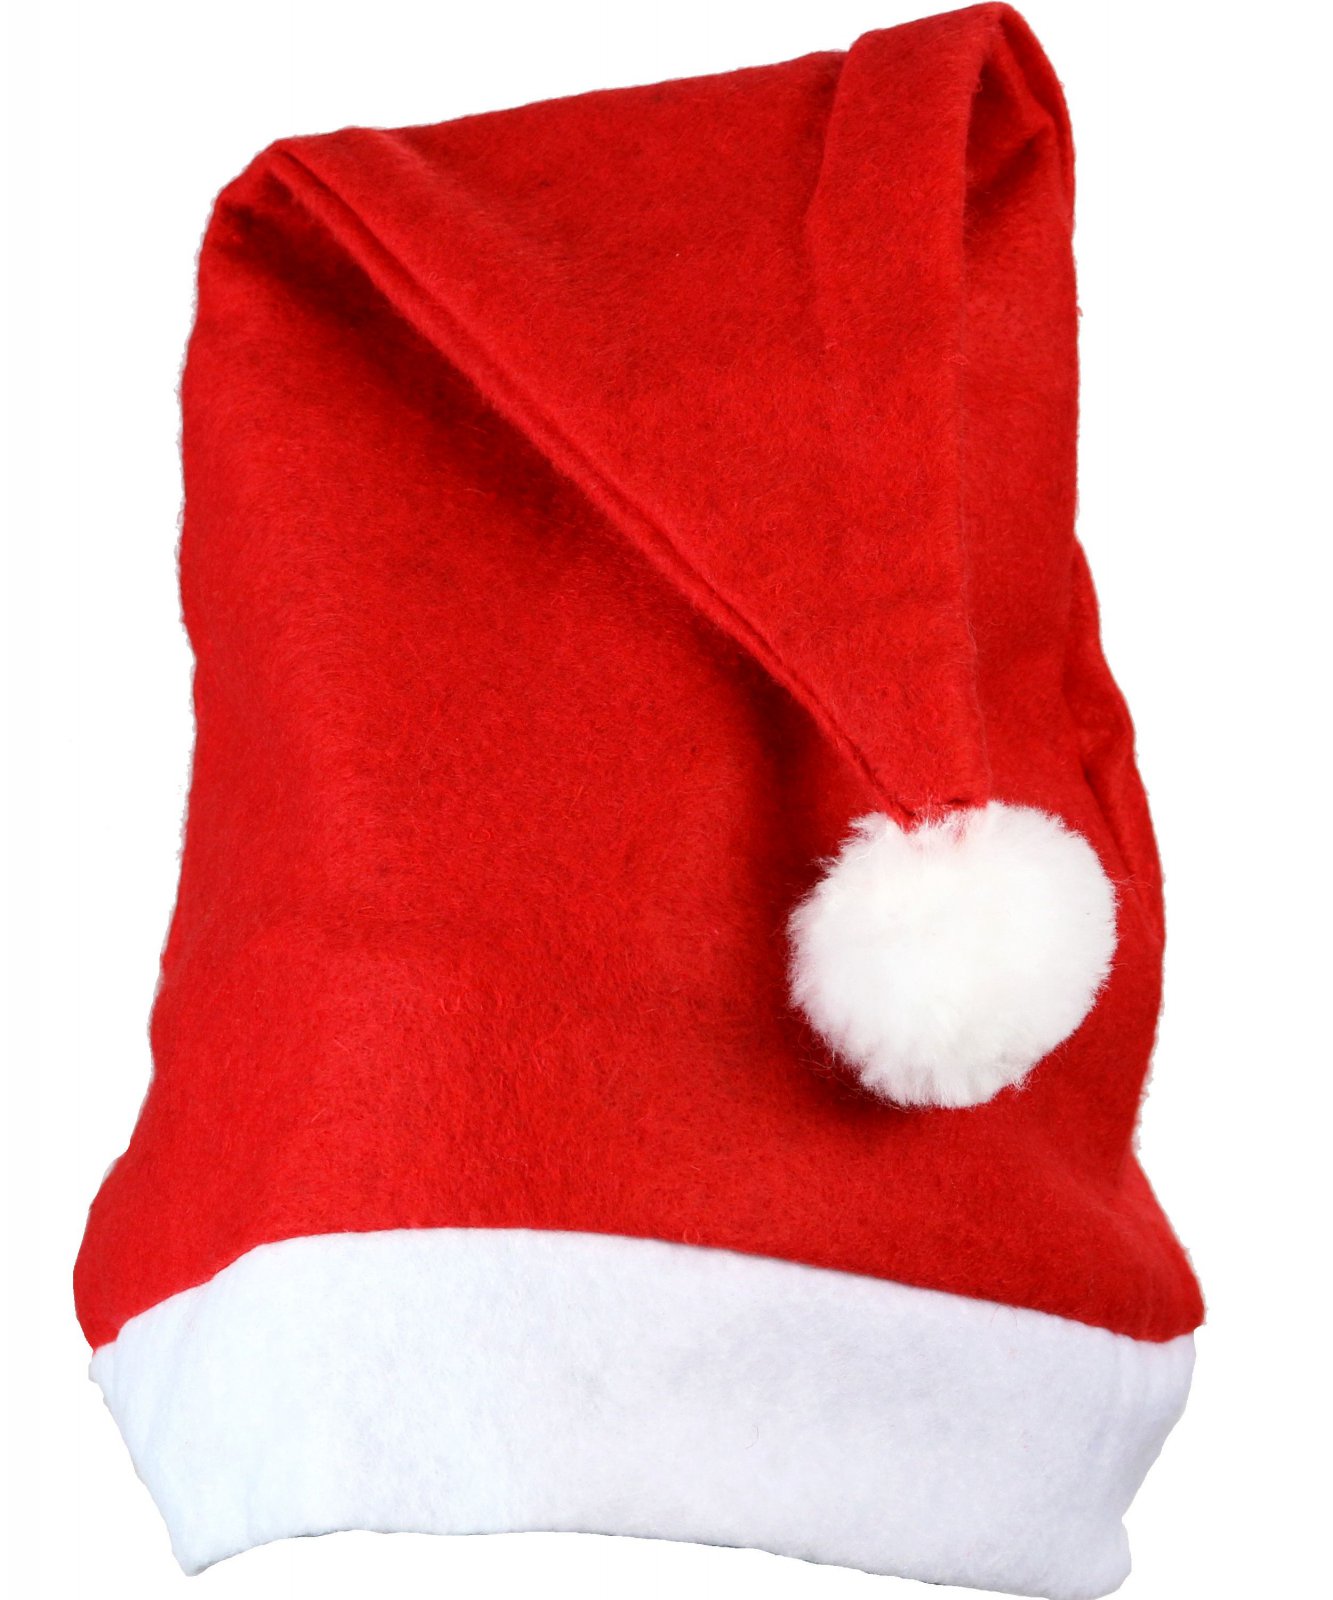 Weihnachtsmütze mit roten Pailletten Nikolausmütze Mütze Bommel Plüsch Xmas neu 